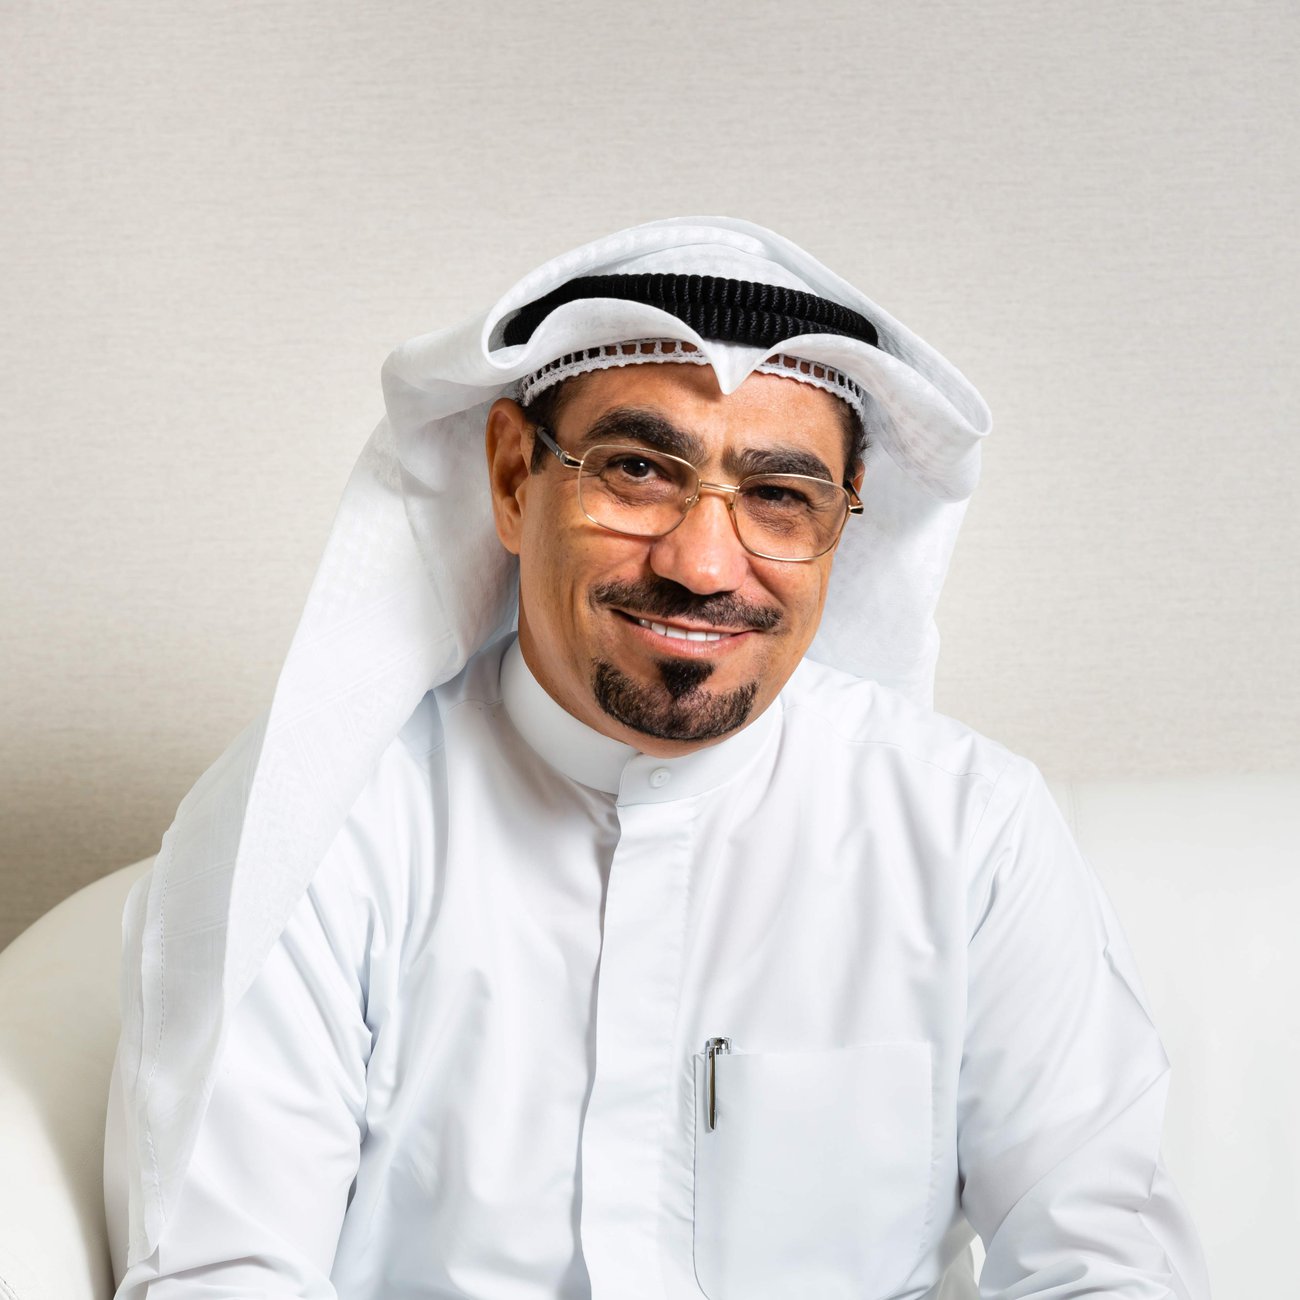 Deputy general manager Mutasher Al-Badry